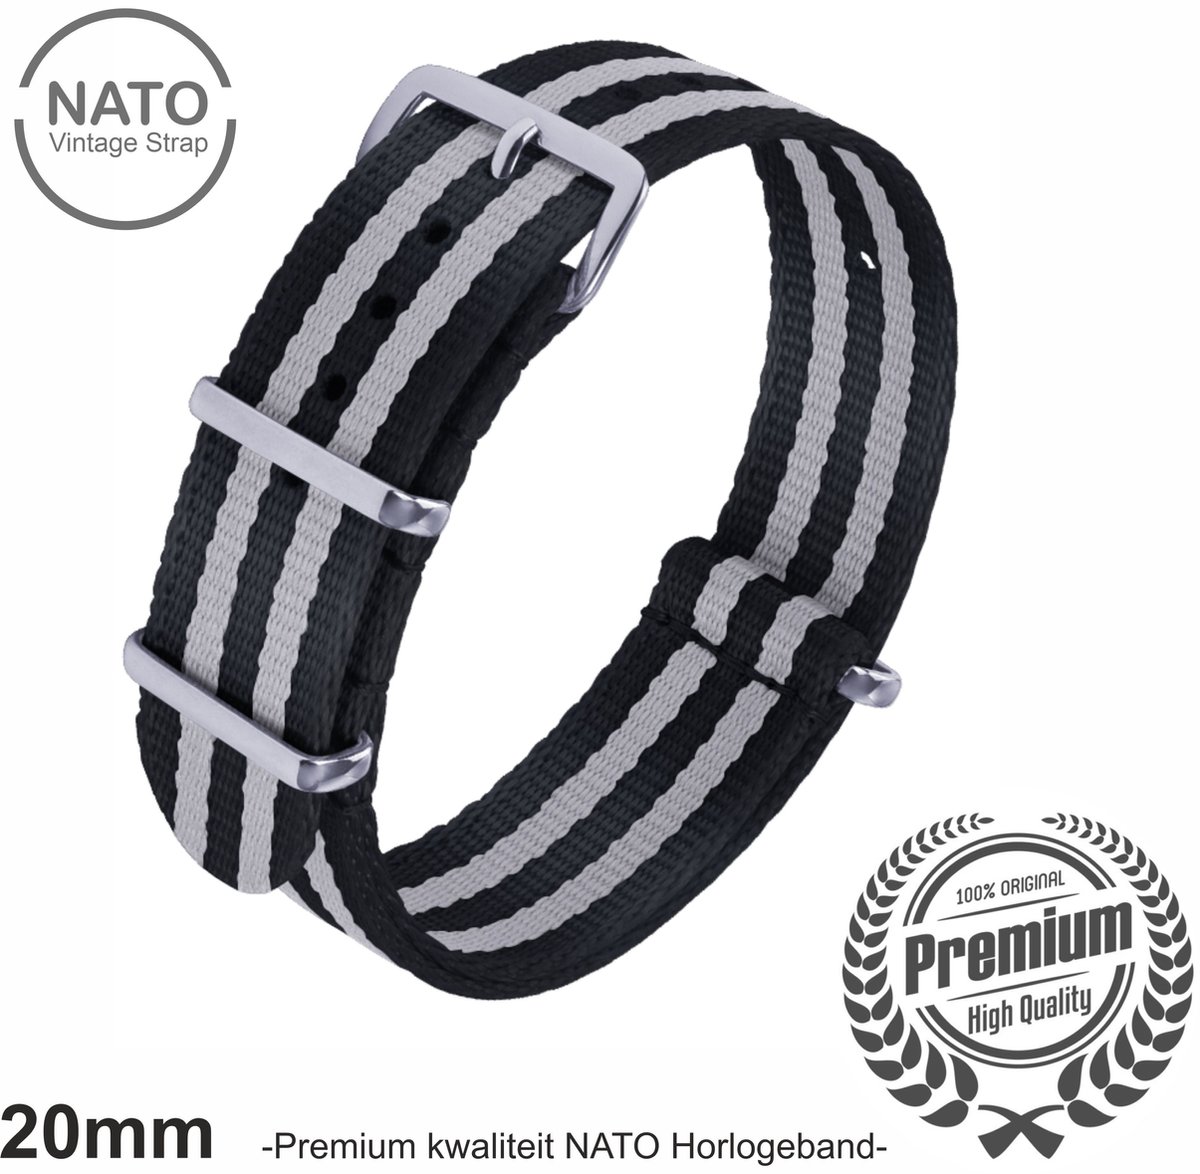 20mm Premium Nato horlogeband Zwart Grijs gestreept - Vintage James Bond look- Nato Strap collectie - Mannen - Horlogebanden - 20 mm bandbreedte